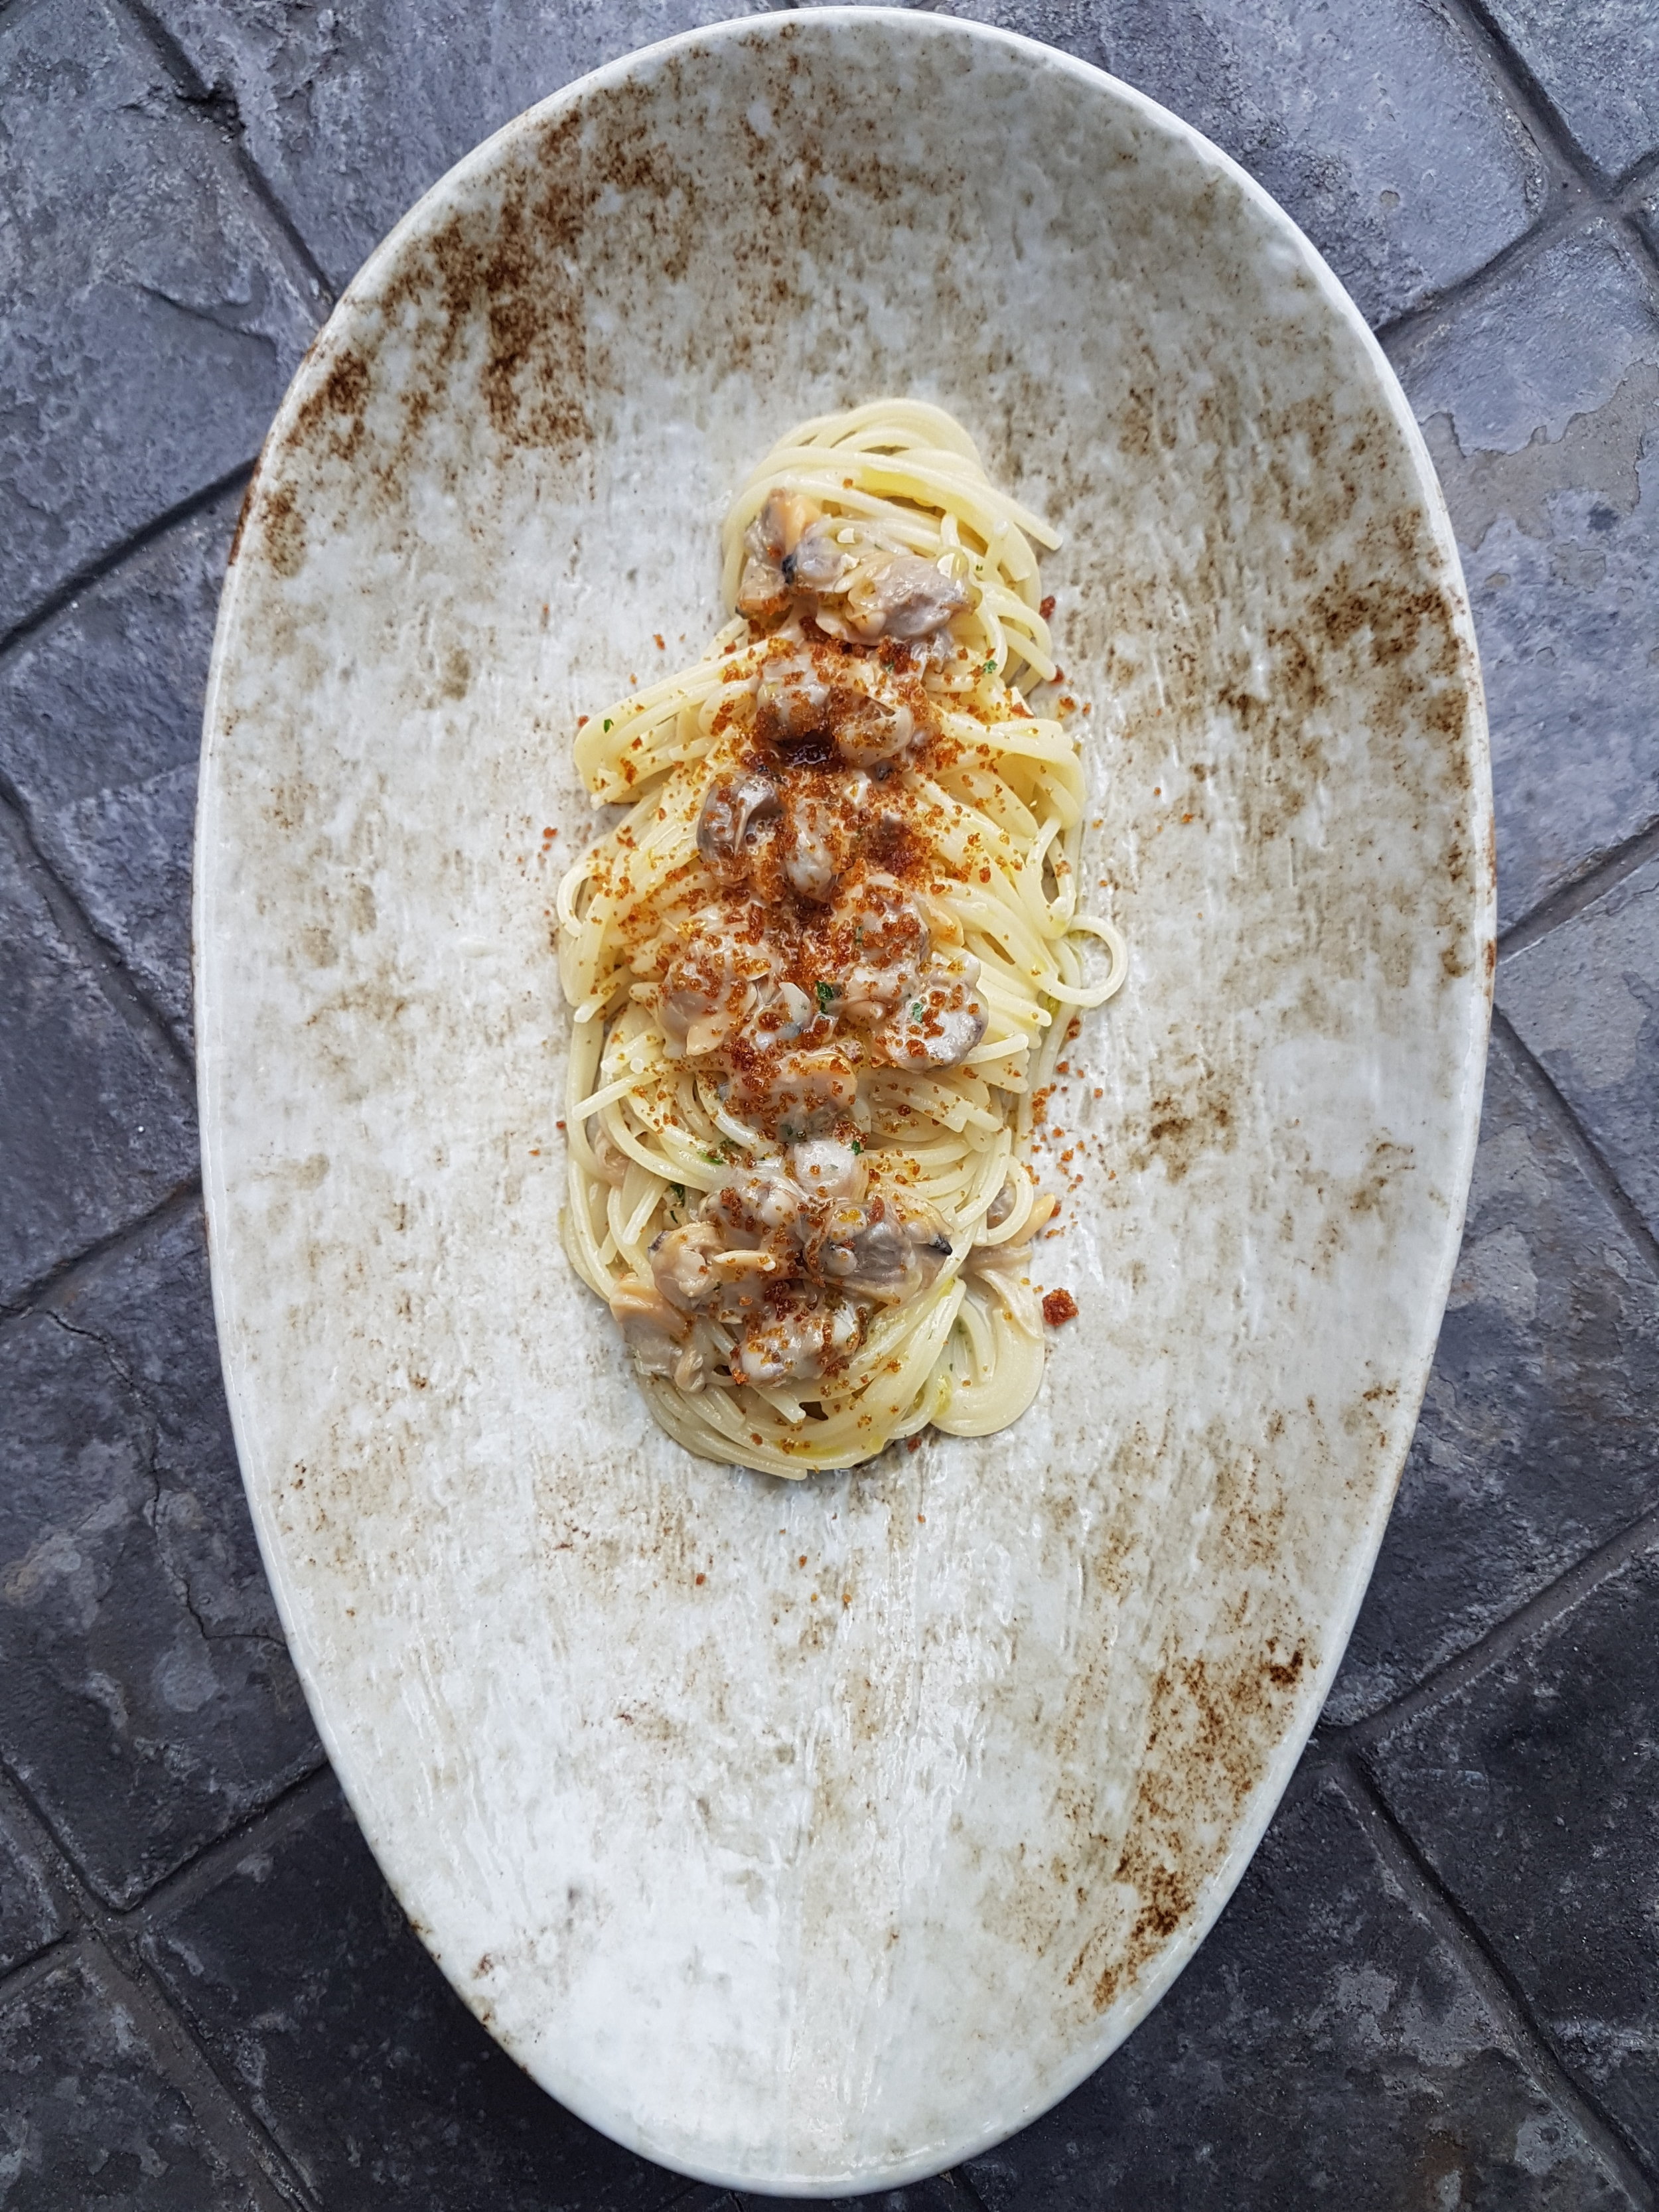  SPAGHETTI VONGOLE E BOTTARGA | Spaghetti with Italian clams and cured fish roe 